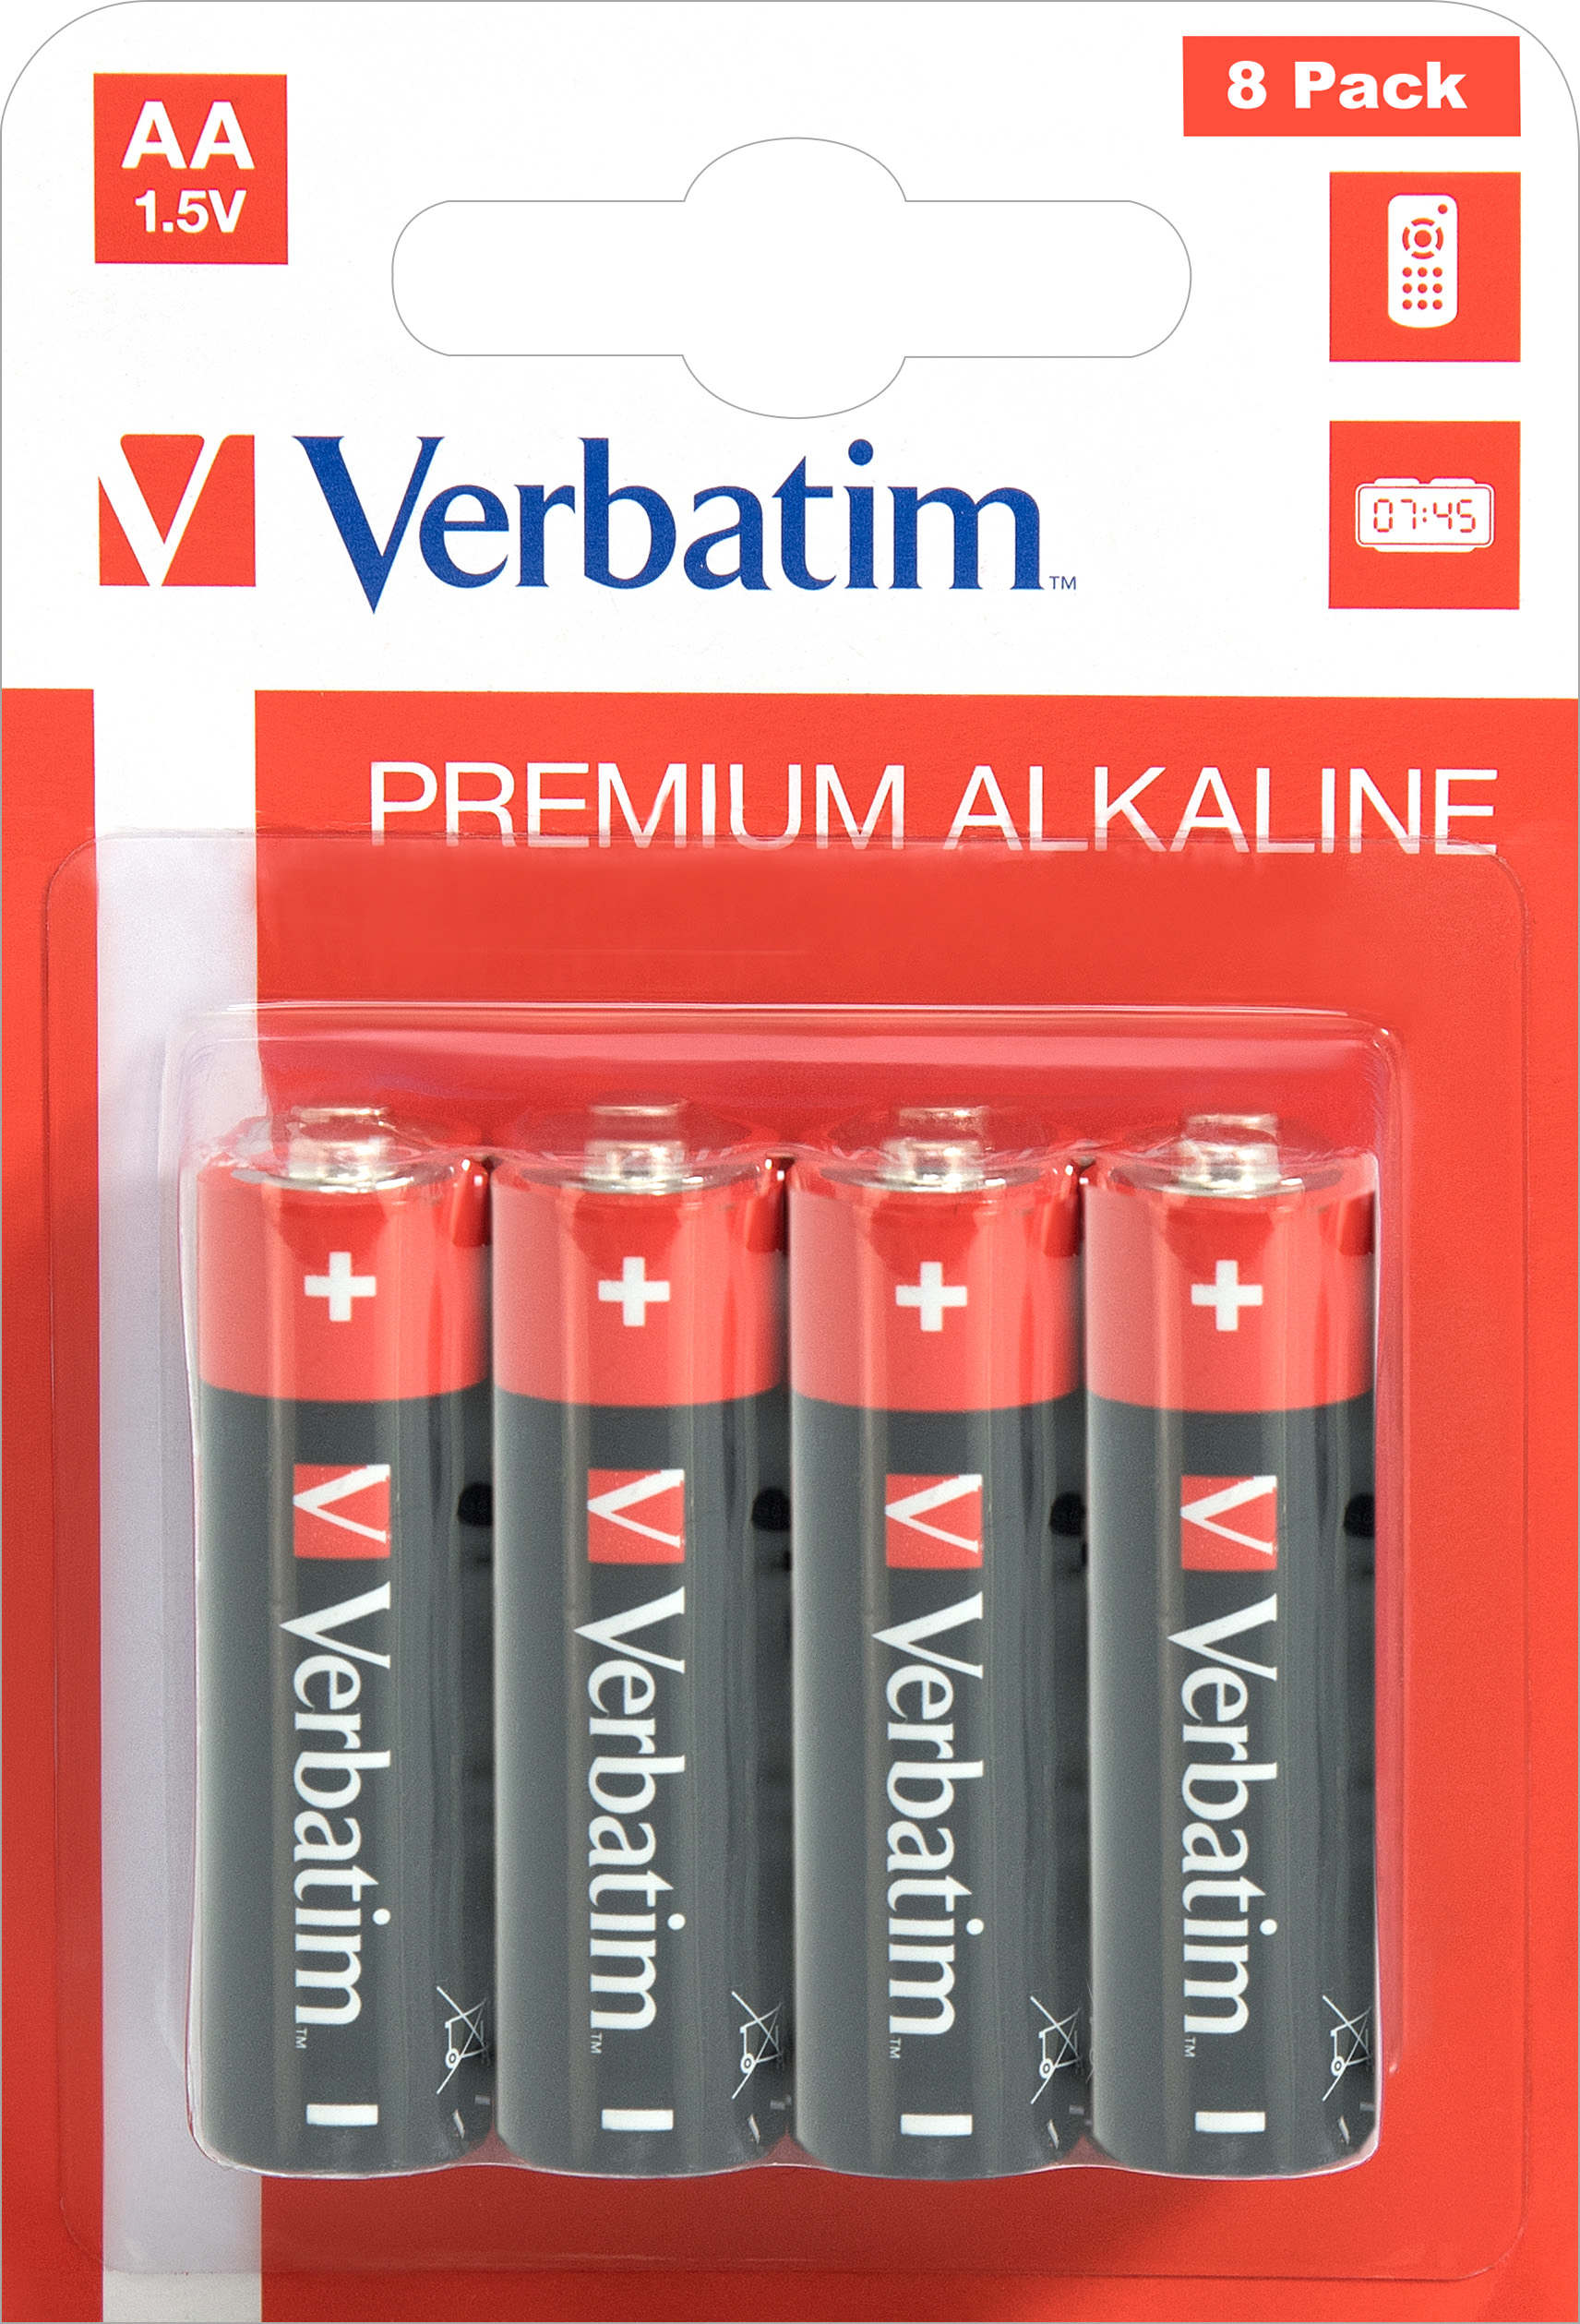 Verbatim Batterie Alkaline, Mignon, AA, LR06, 1.5V Premium, Retail Blister (8-Pack)